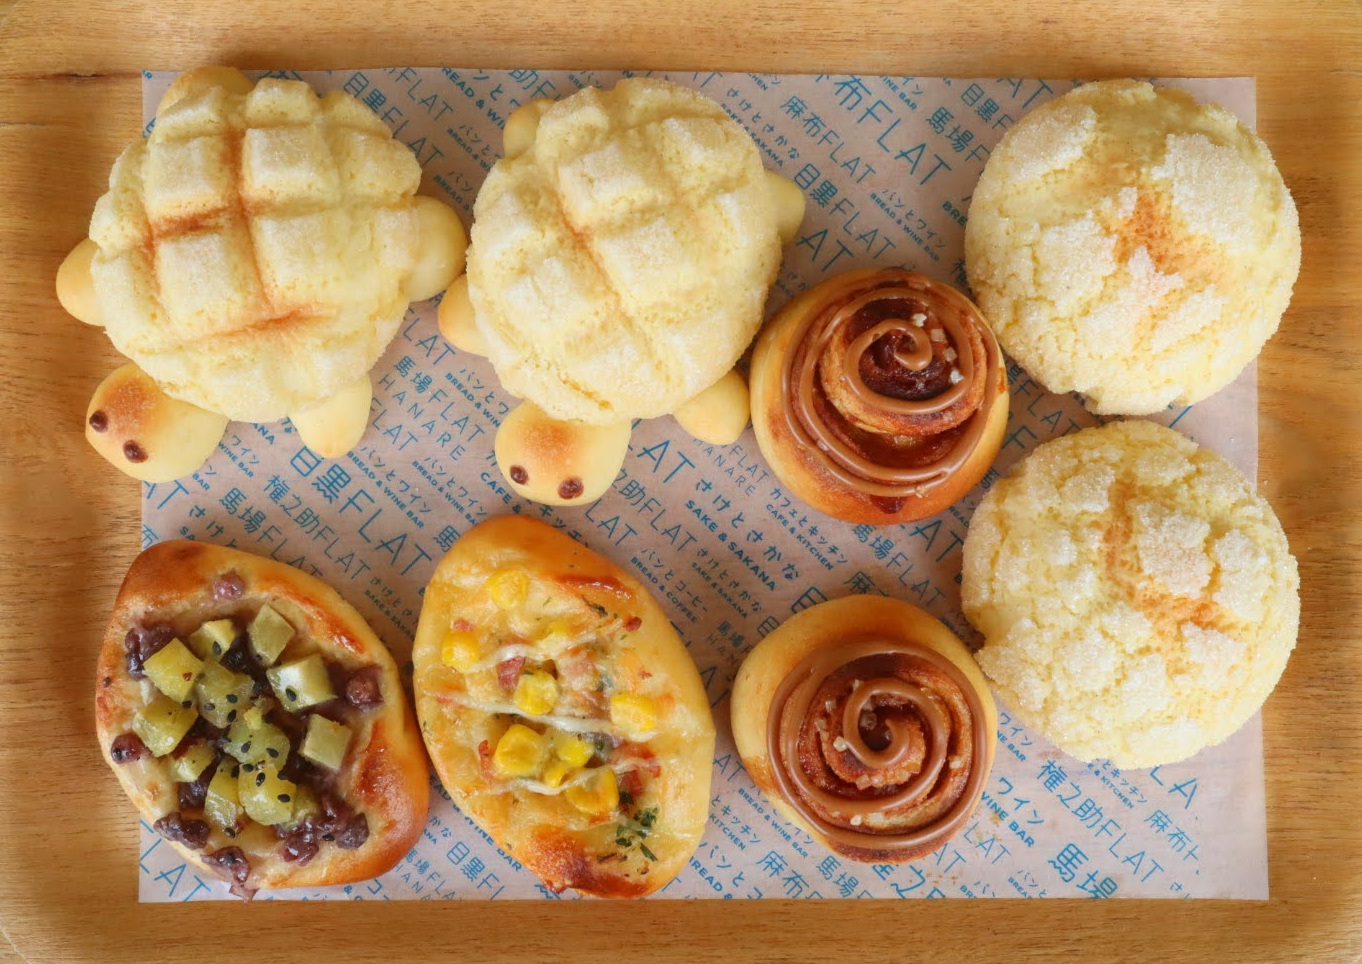 手作りパンセット 菓子パン メロン皮 冷凍パン生地セット パンとコーヒー 馬場flat